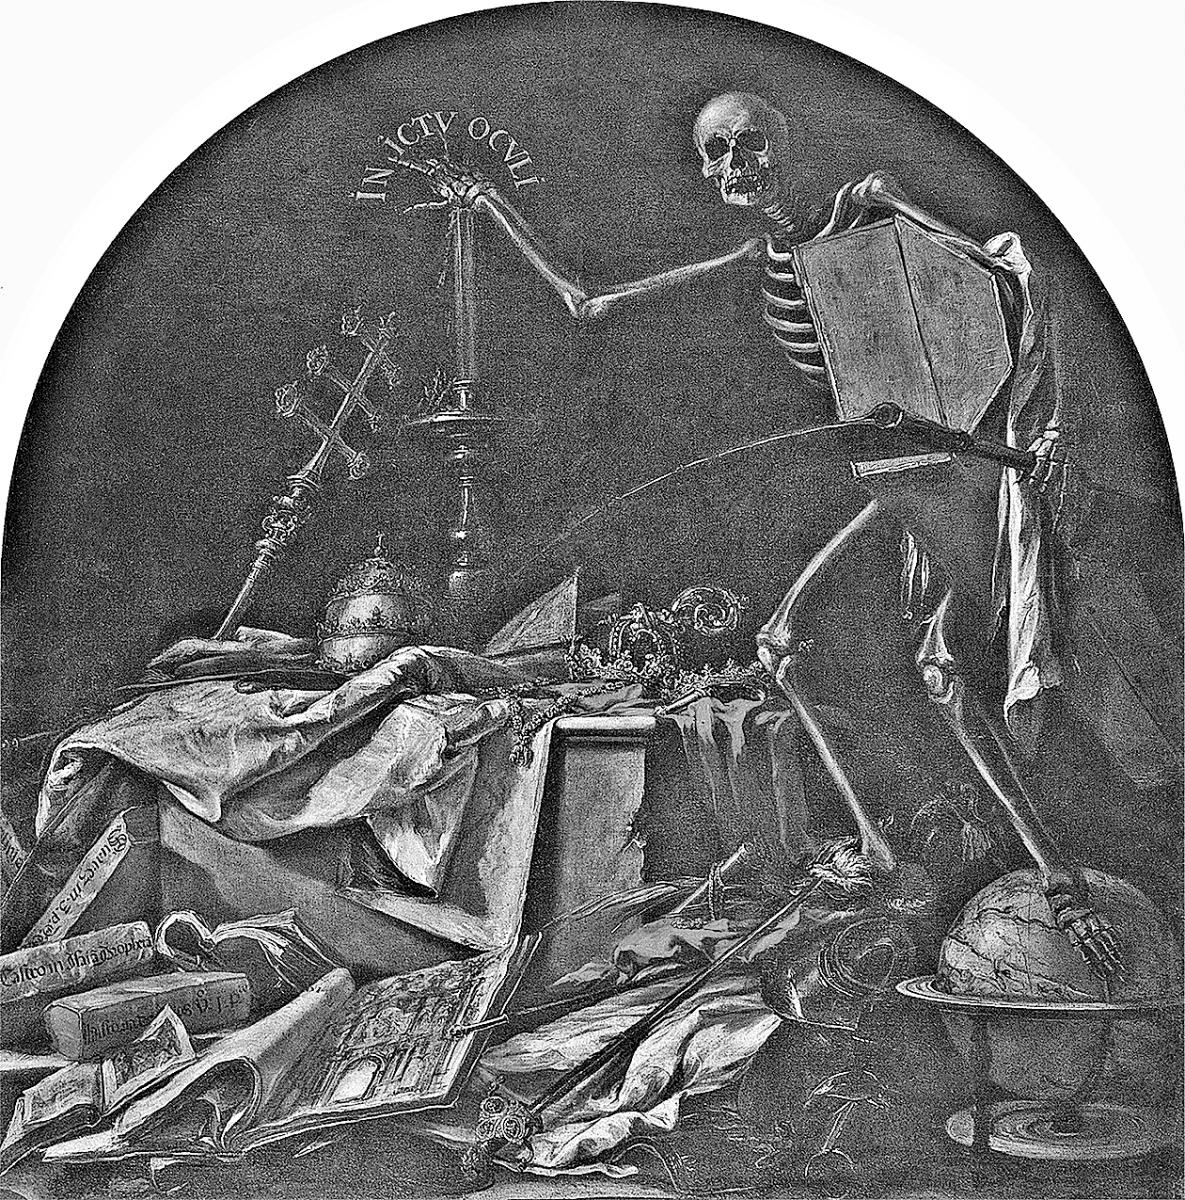 IN ICTU OCULI. Dramática pintura del español Valdés Leal, circa 1670. Pertenece a un díptico sobre las postrimerías ubicado en el Hospital de la Caridad, Sevilla.